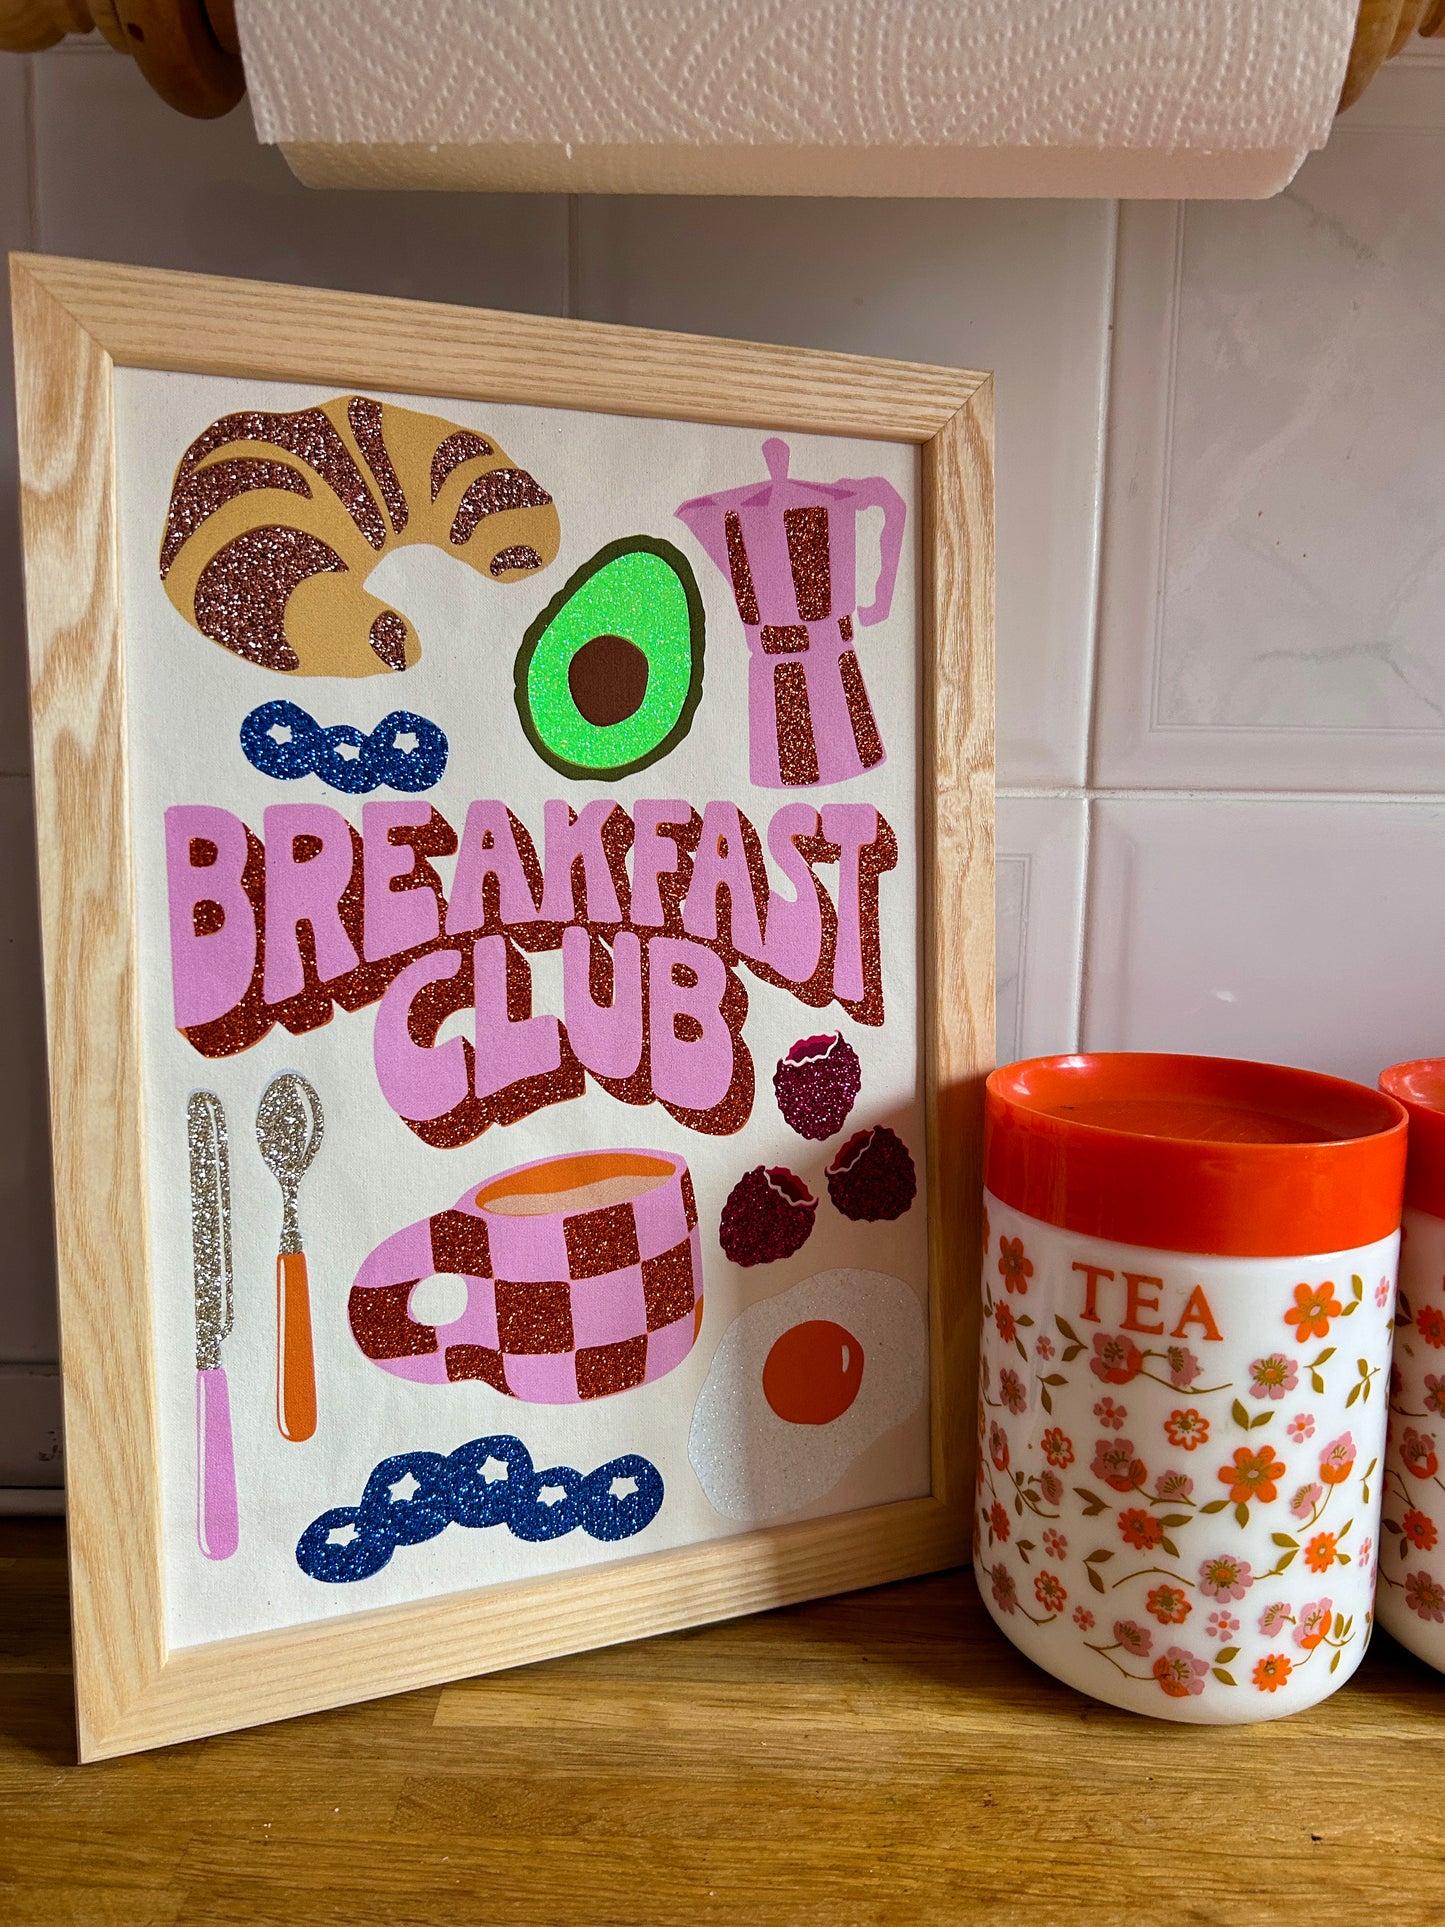 Breakfast Club Fabric Print